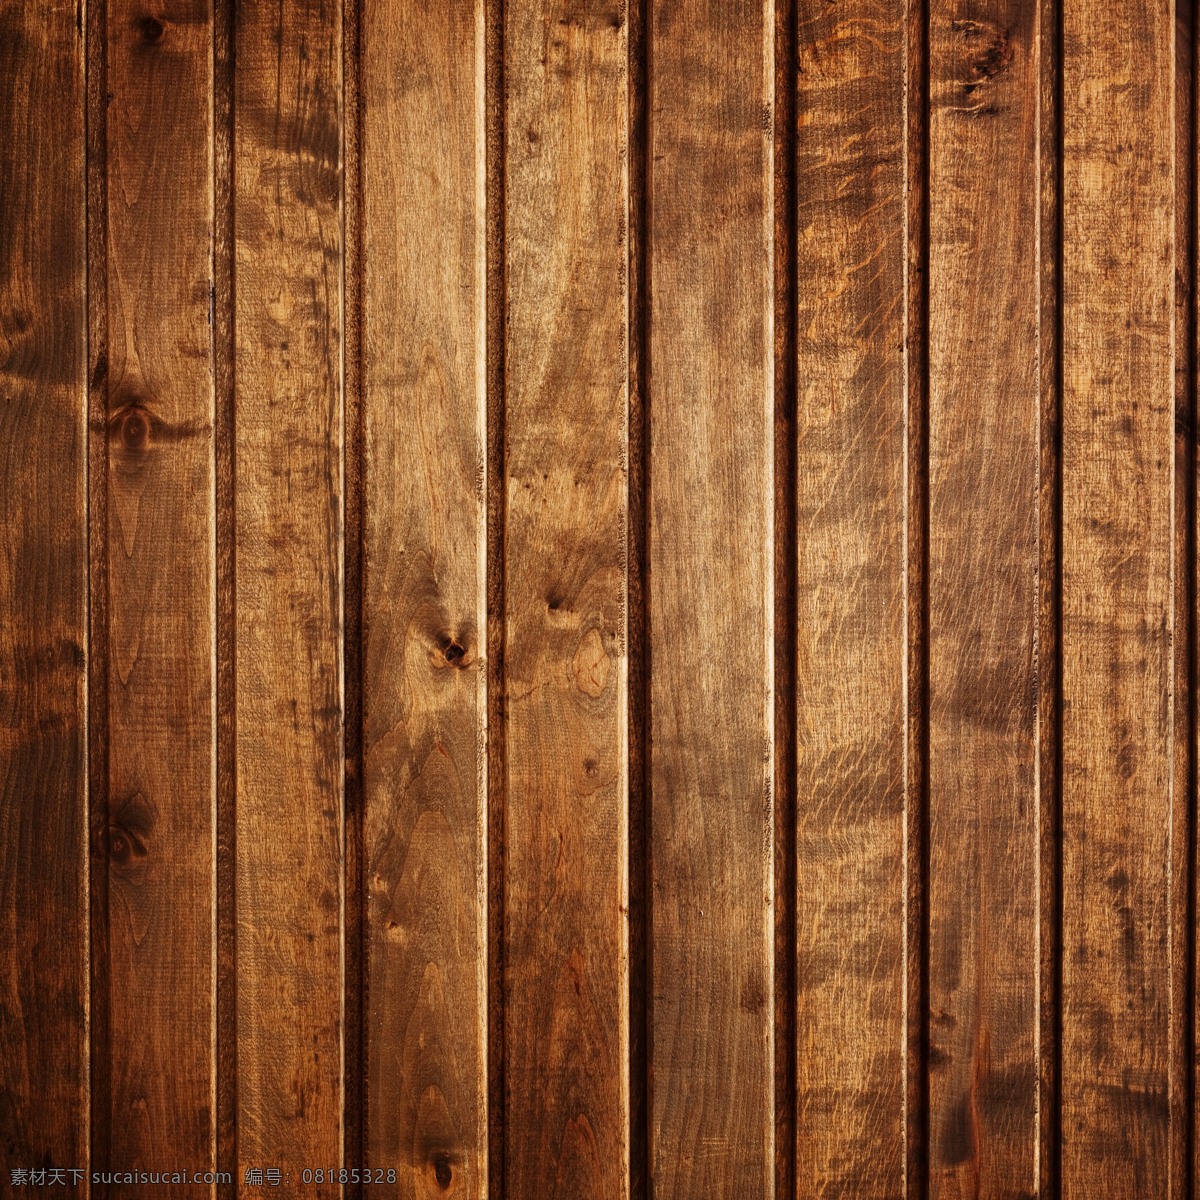 高清木板 高清 木板 木地板 怀旧 家装 地板 木头 破旧 家居生活 生活百科